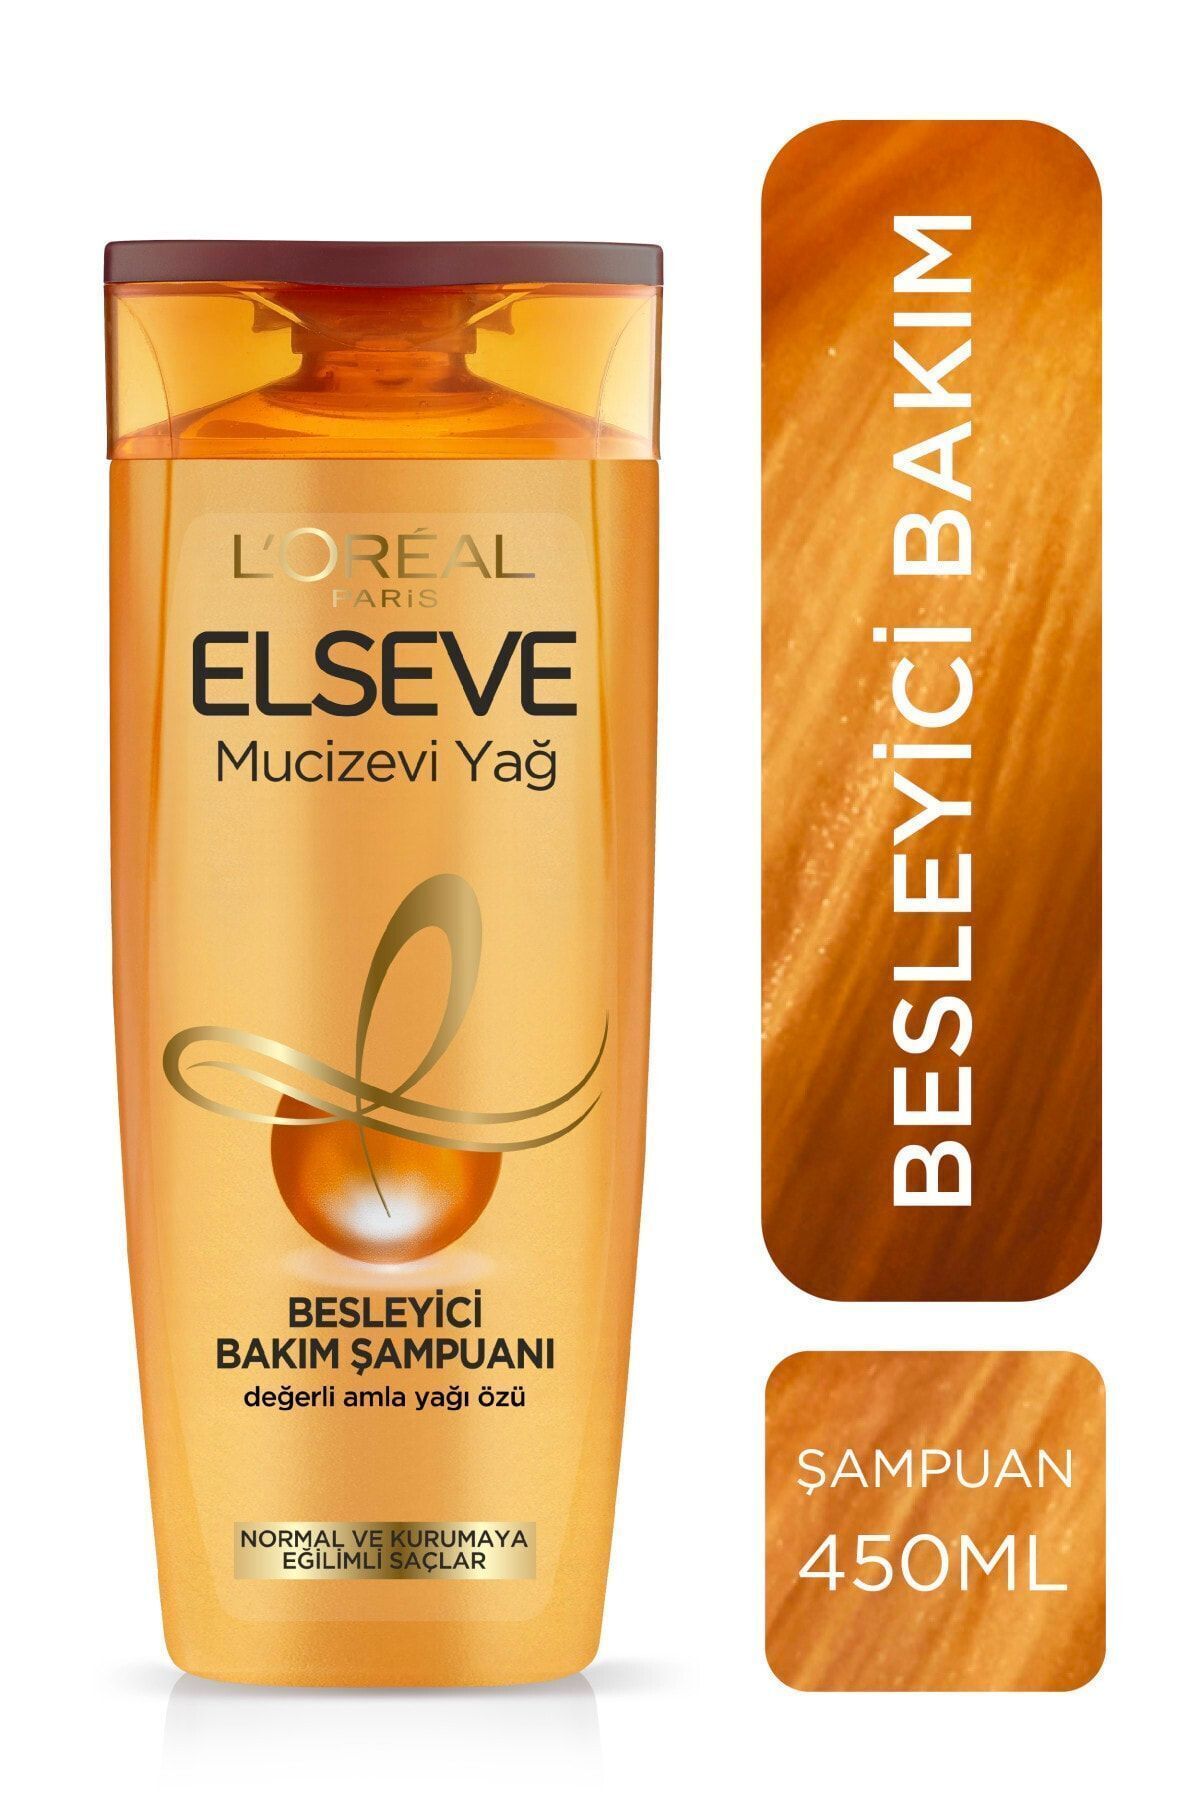 Elseve L'oréal Paris Mucizevi Yağ Besleyici Bakım Şampuanı 450 ml